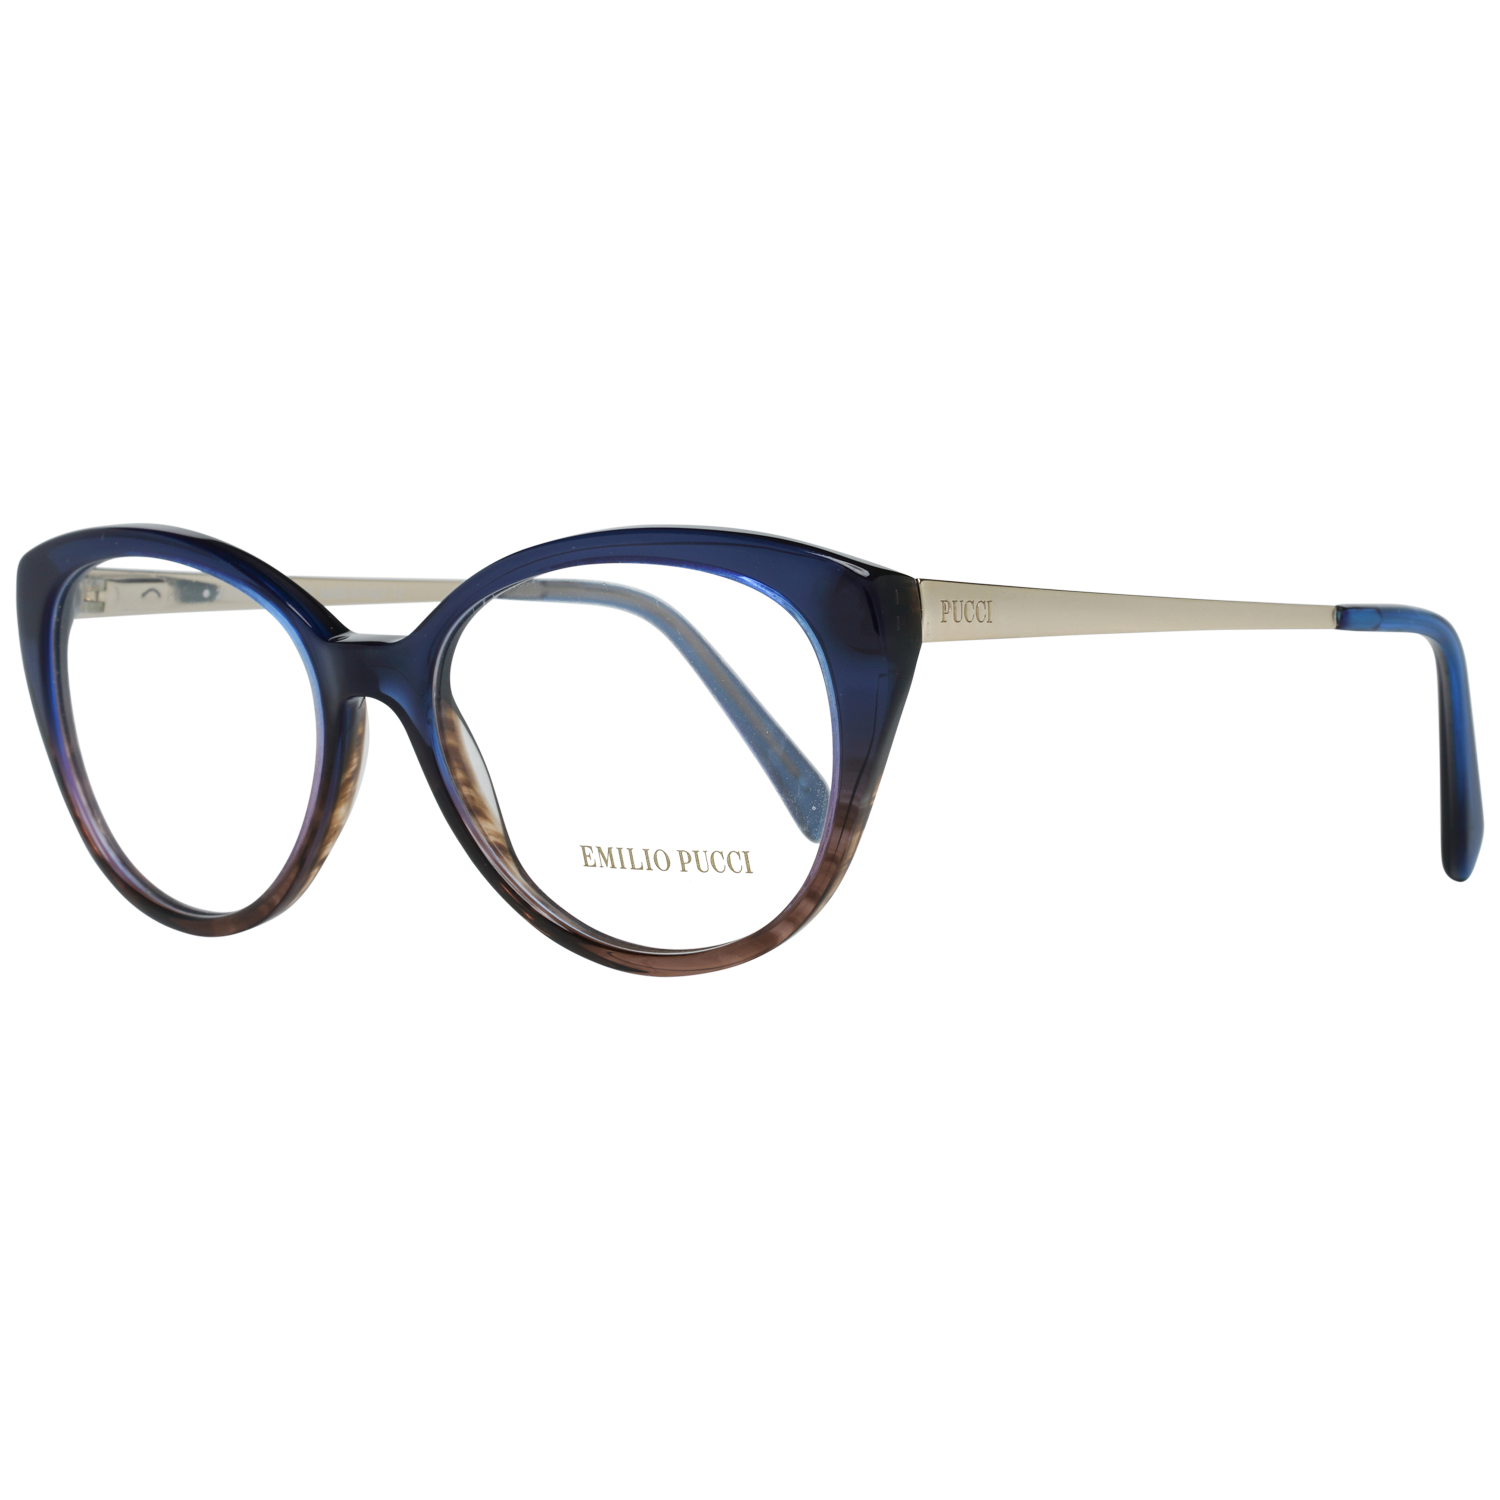 Emilio Pucci Frames Emilio Pucci Optical Frame EP5063 092 53 Eyeglasses Eyewear UK USA Australia 